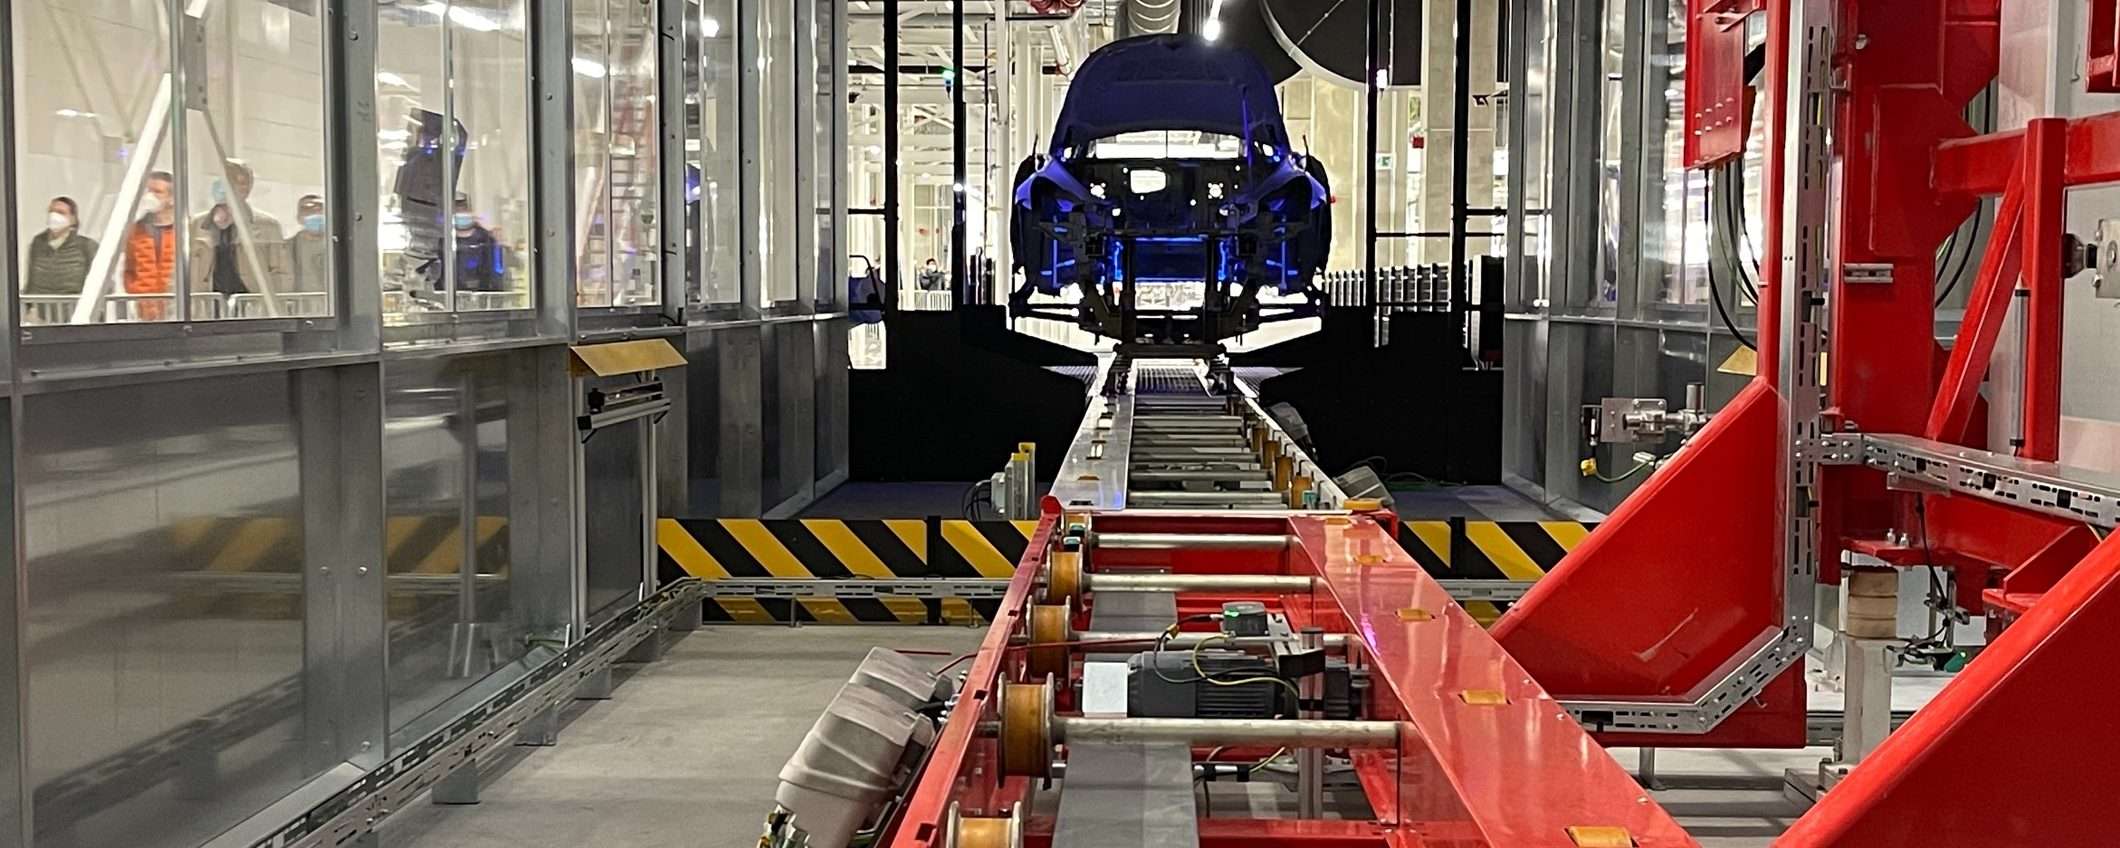 Dipendente Tesla attaccato da robot: la rivolta delle macchine?